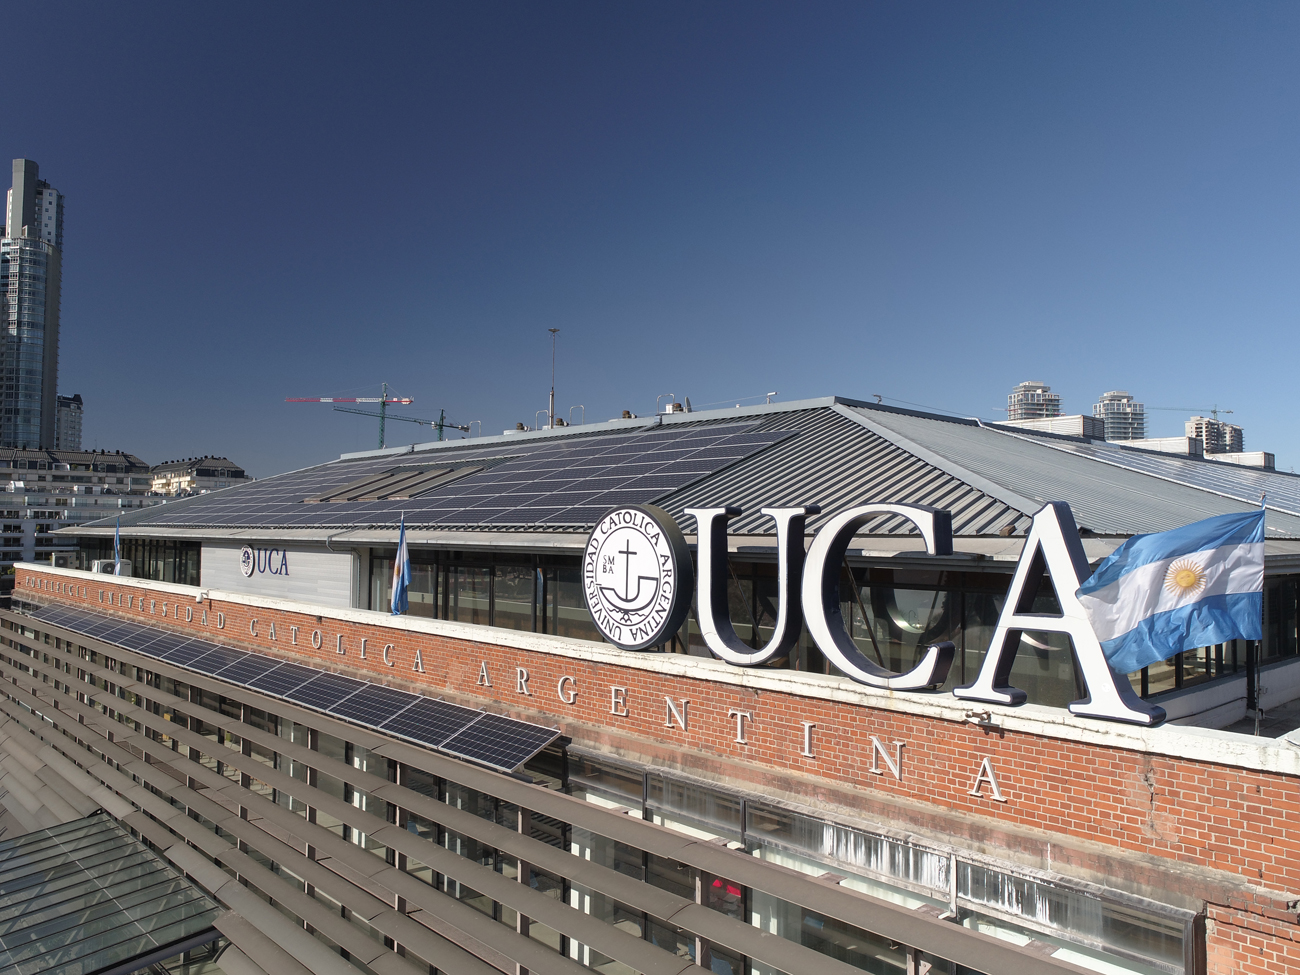 La Universidad instal� paneles solares en su edificio principal